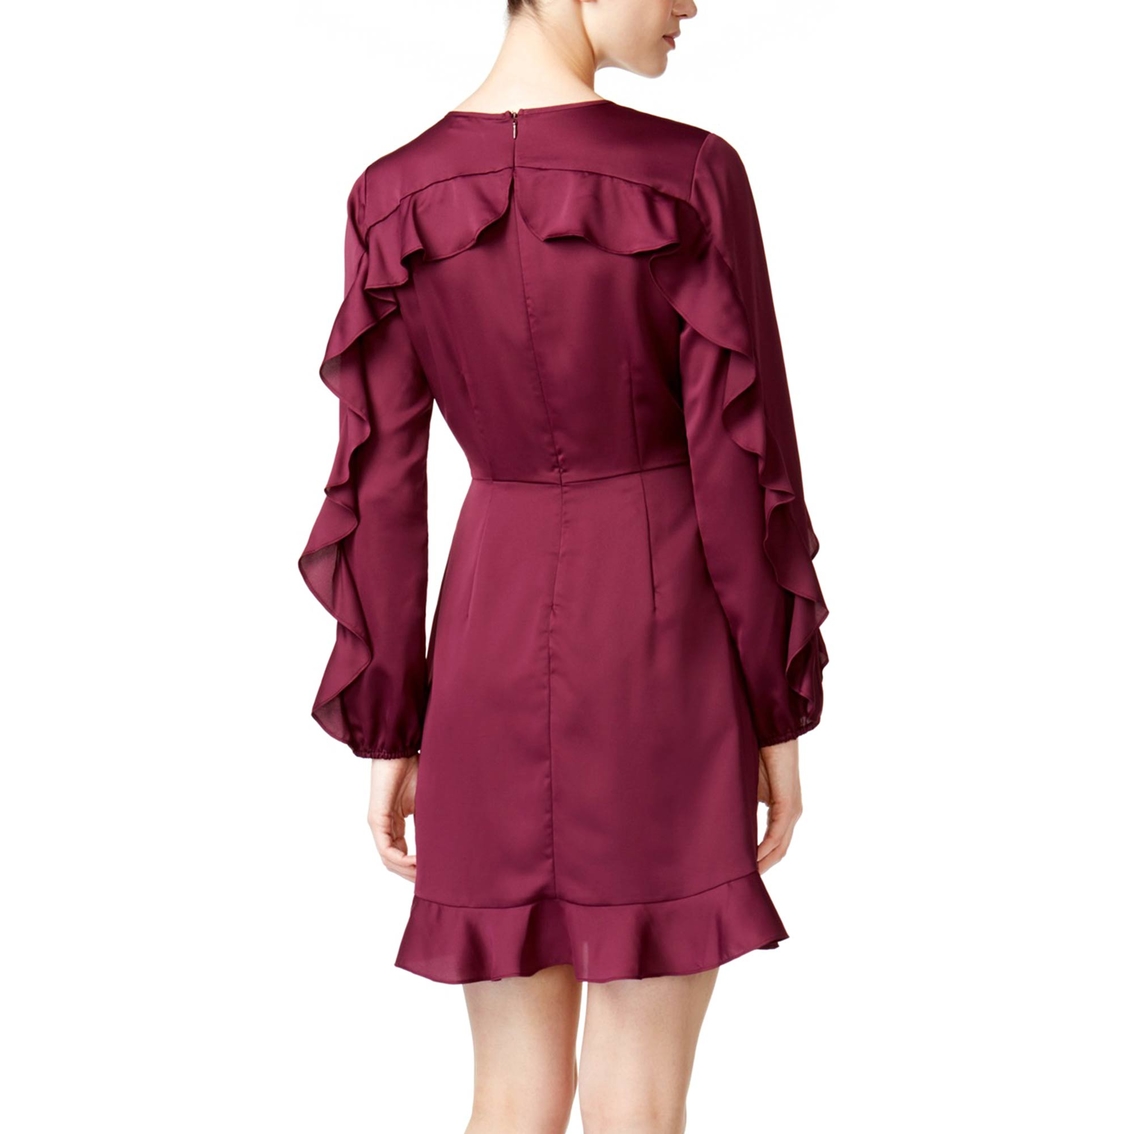 Maison Jules Ruffled Sleeve Dress - Image 2 of 2